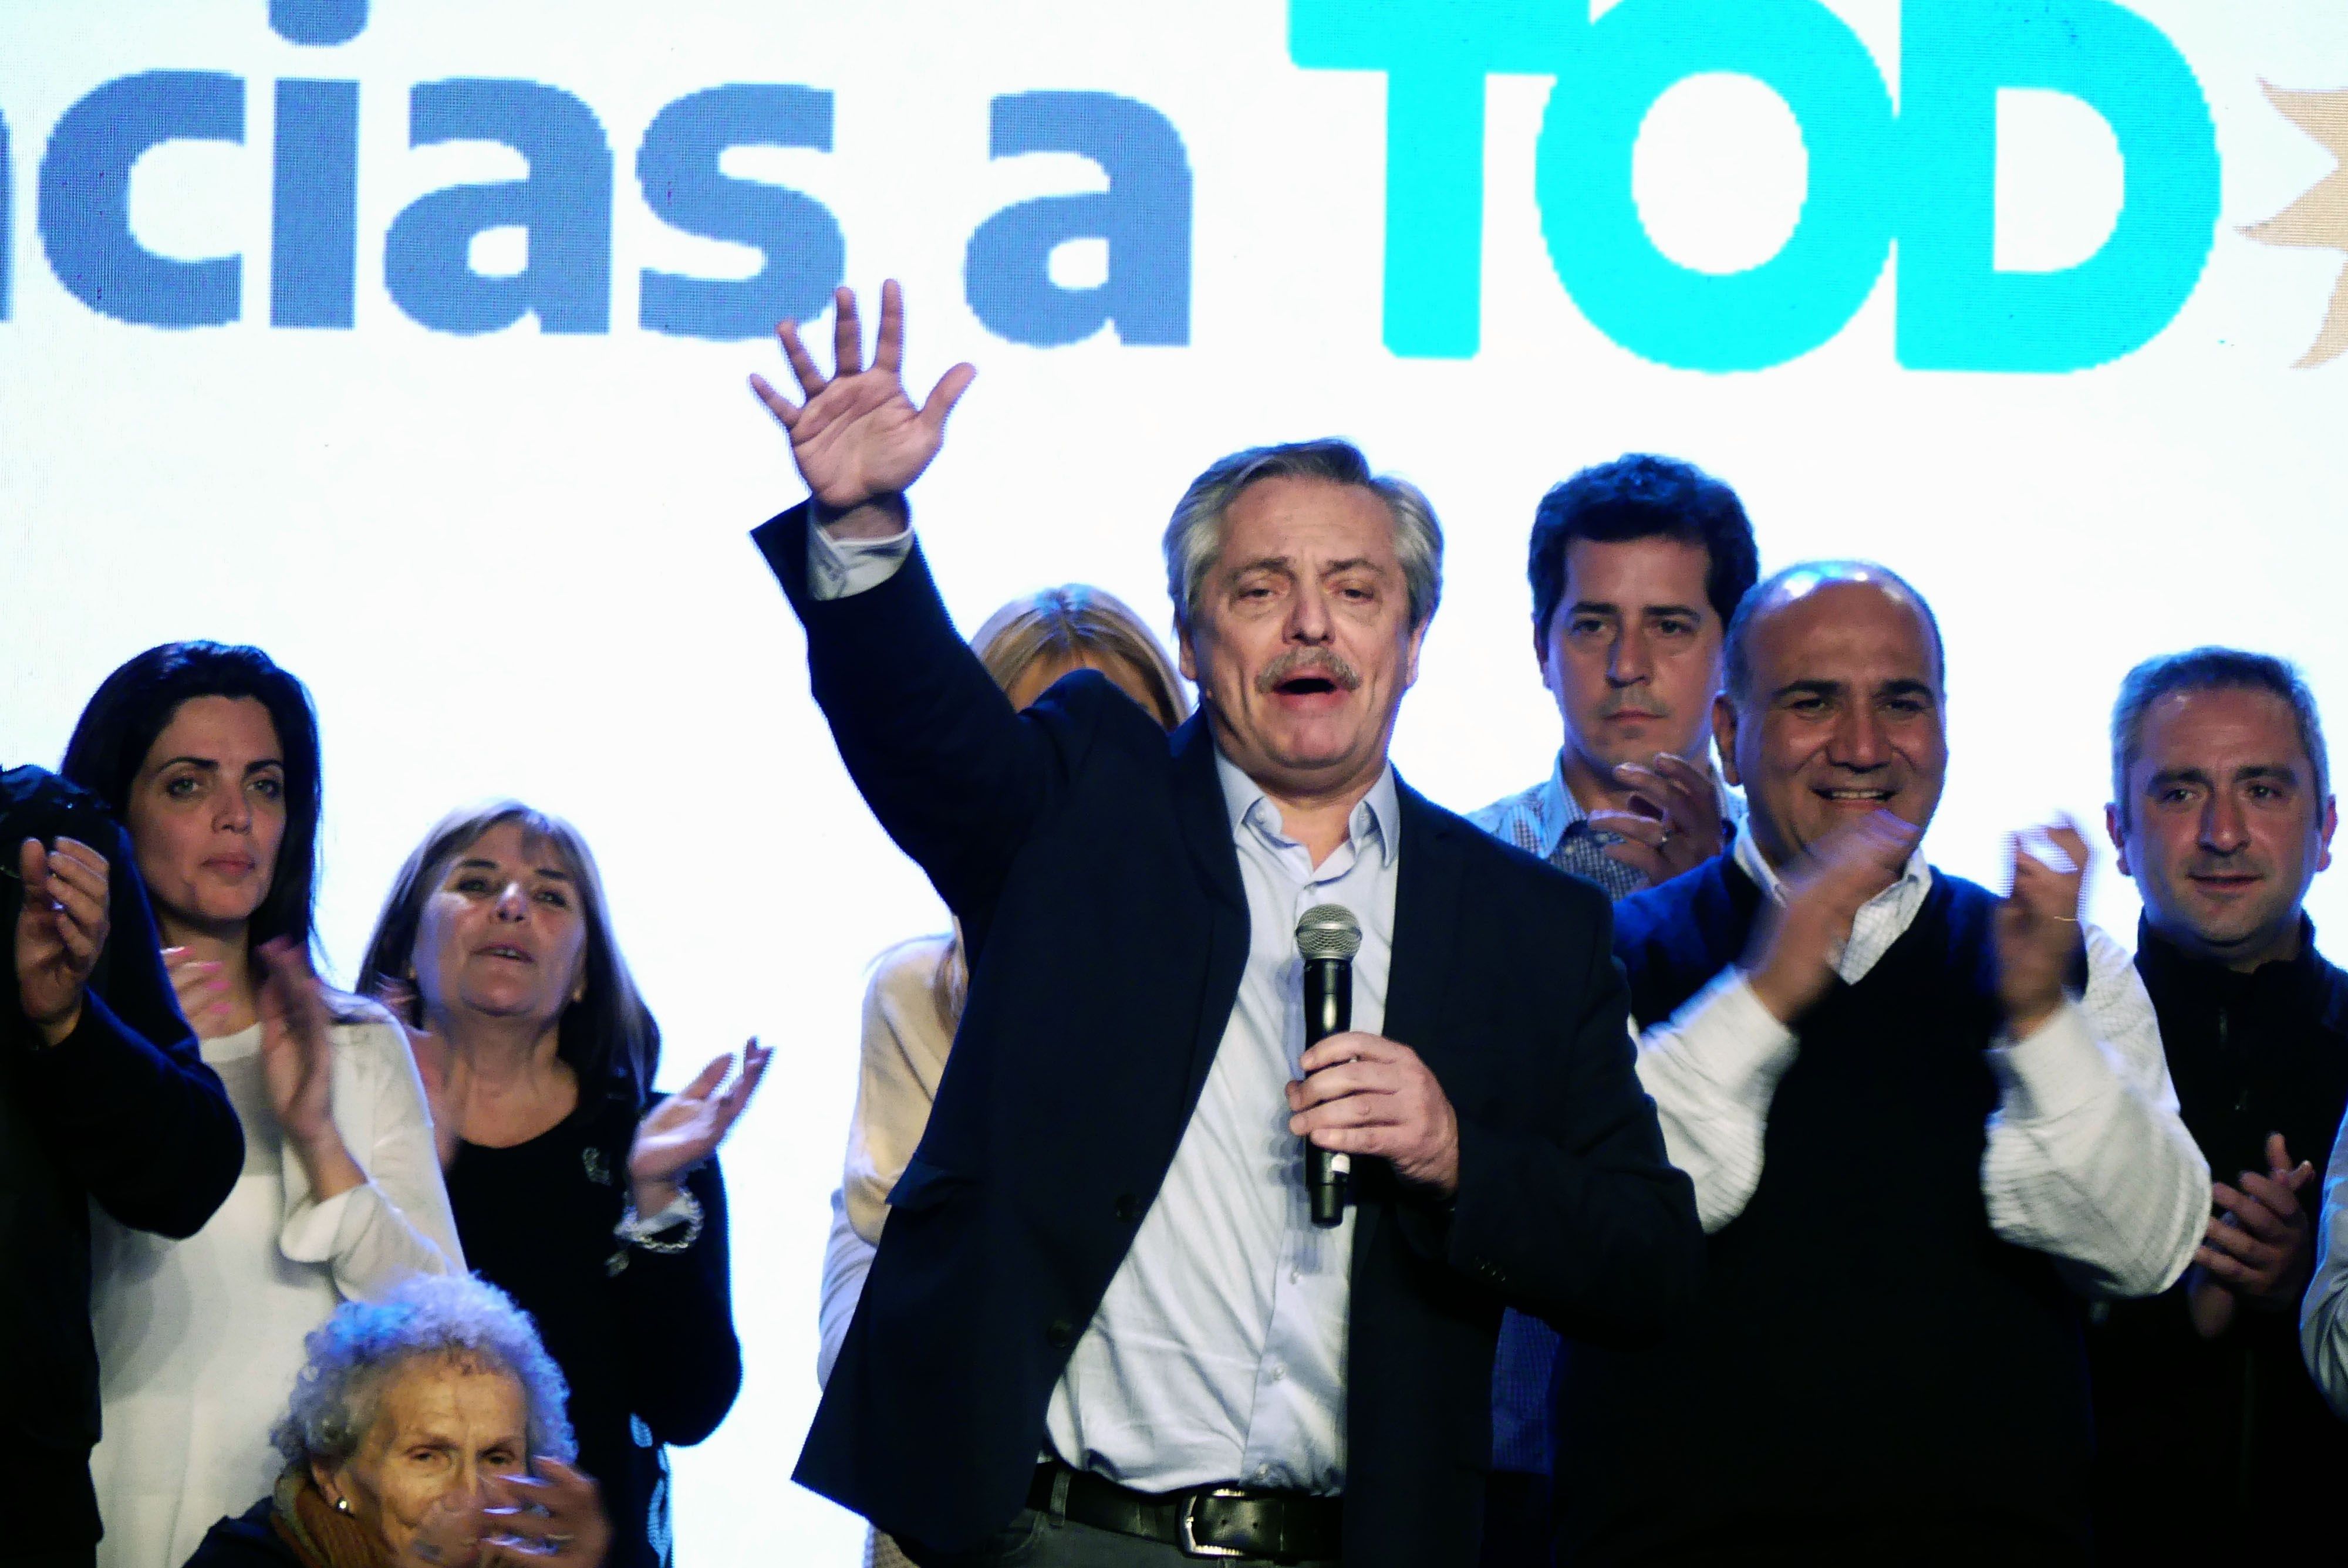 El peronista Alberto Fernandez .es el candidato a la Presidencia de Argentina más votado en las primarias, 15 puntos por delante del actual mandatario, Mauricio Macri. (Foto Prensa Libre: EFE)